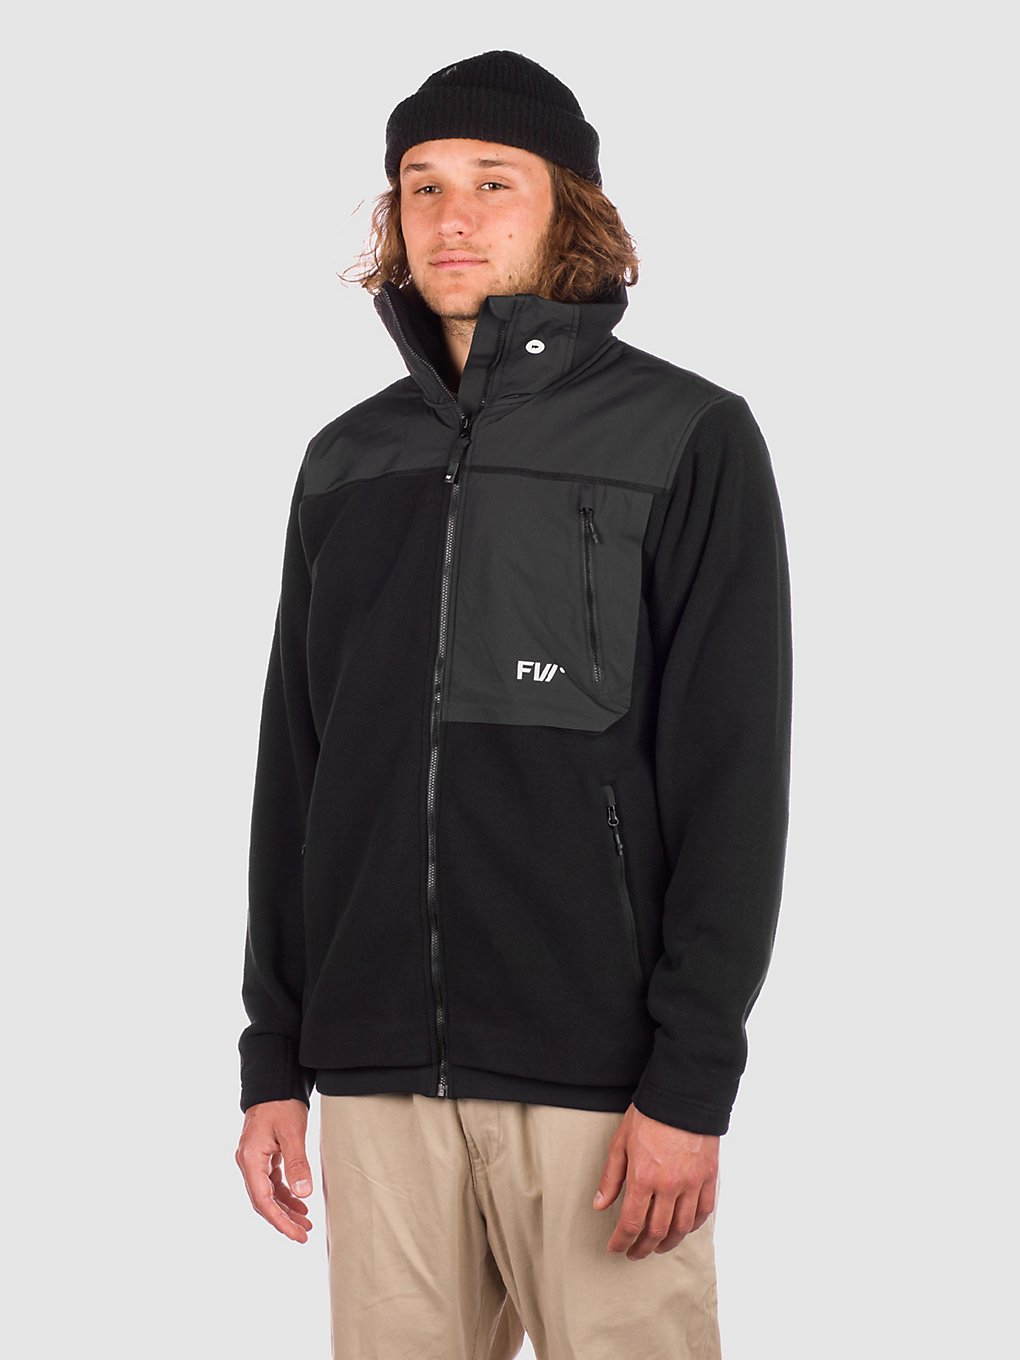 FW Root Classic Fleece Jacket slate black kaufen